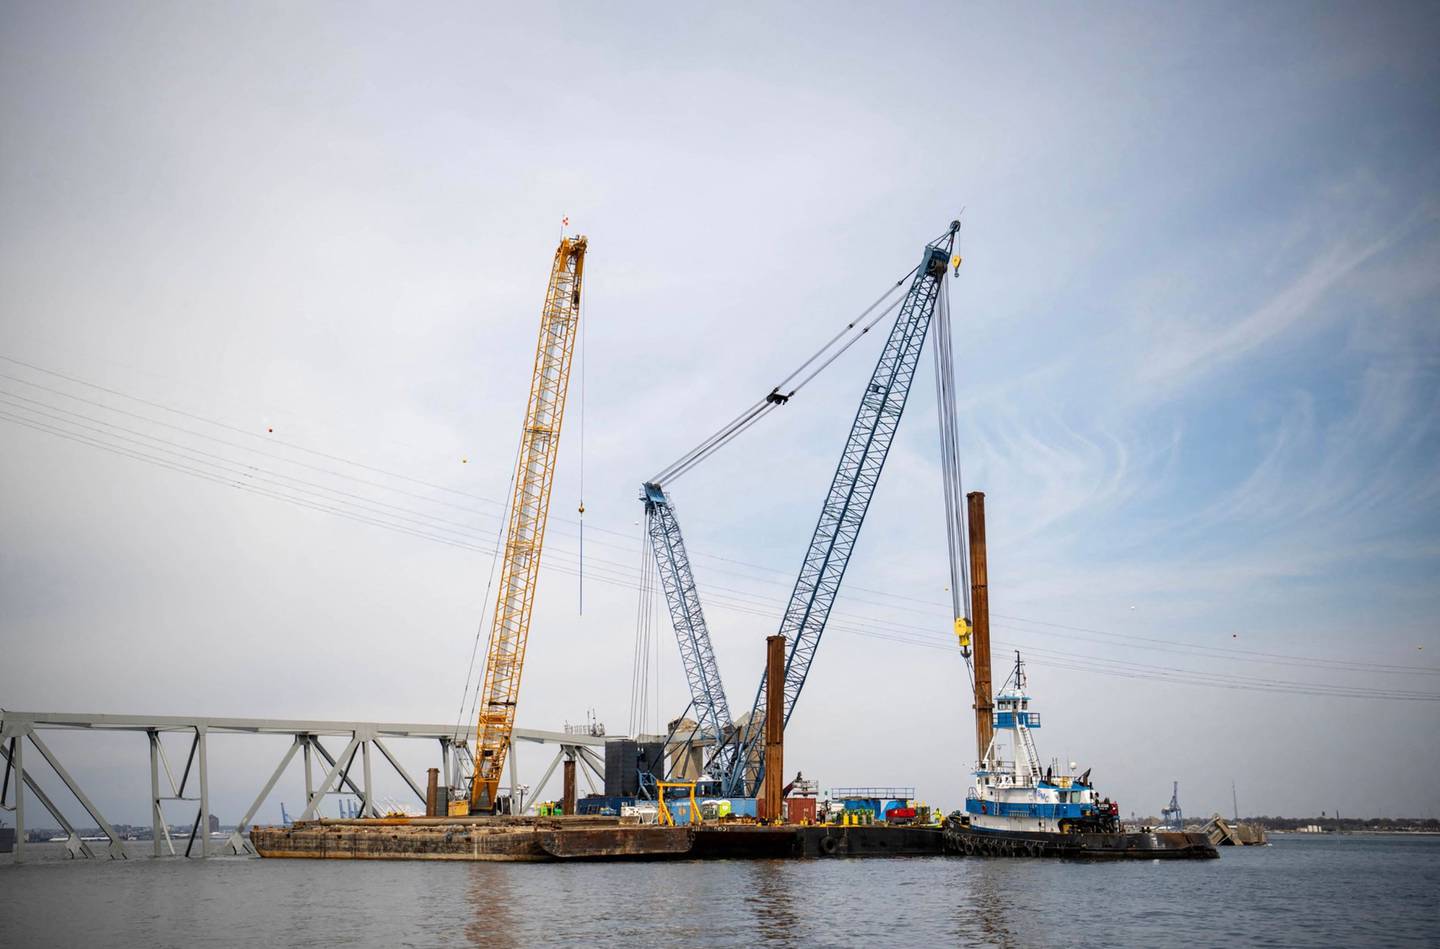 El complejo proceso de limpieza de los restos enredados del puente de Baltimore, que colapsó espectacularmente la semana anterior, comenzó el 30 de marzo con la remoción de una primera sección, dijeron las autoridades.